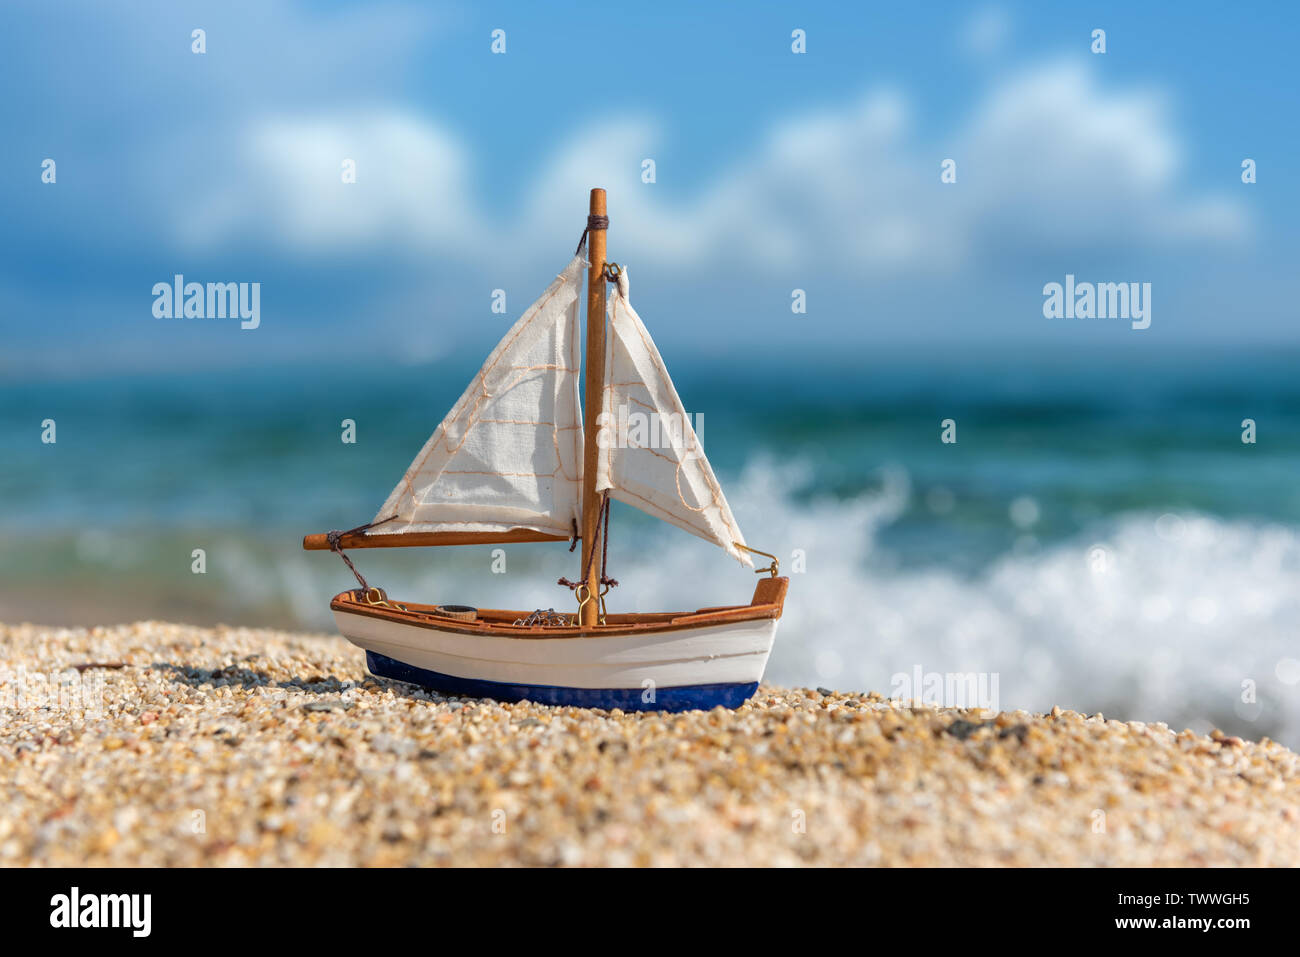 Image de la plage de sable tropicale et voilier jouet. Concept d'été Banque D'Images